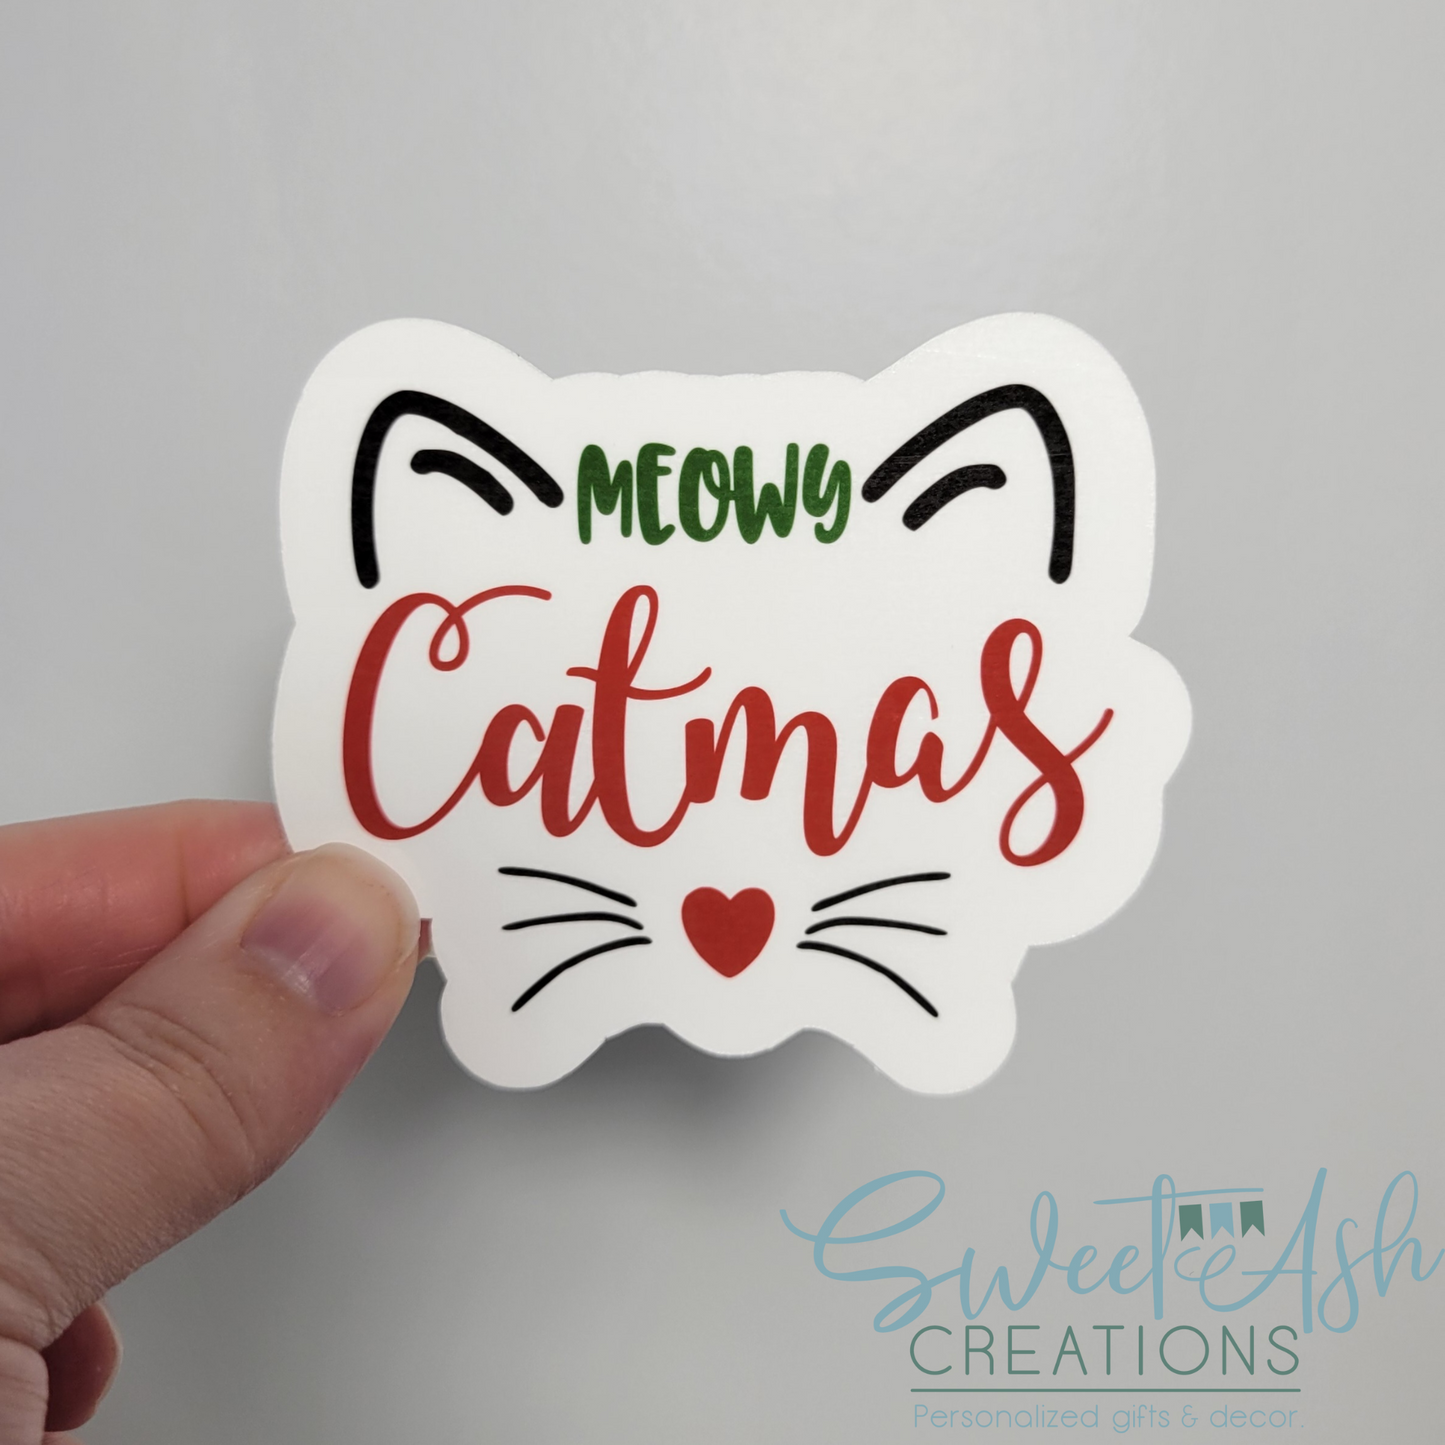 Meowy Catmas Sticker